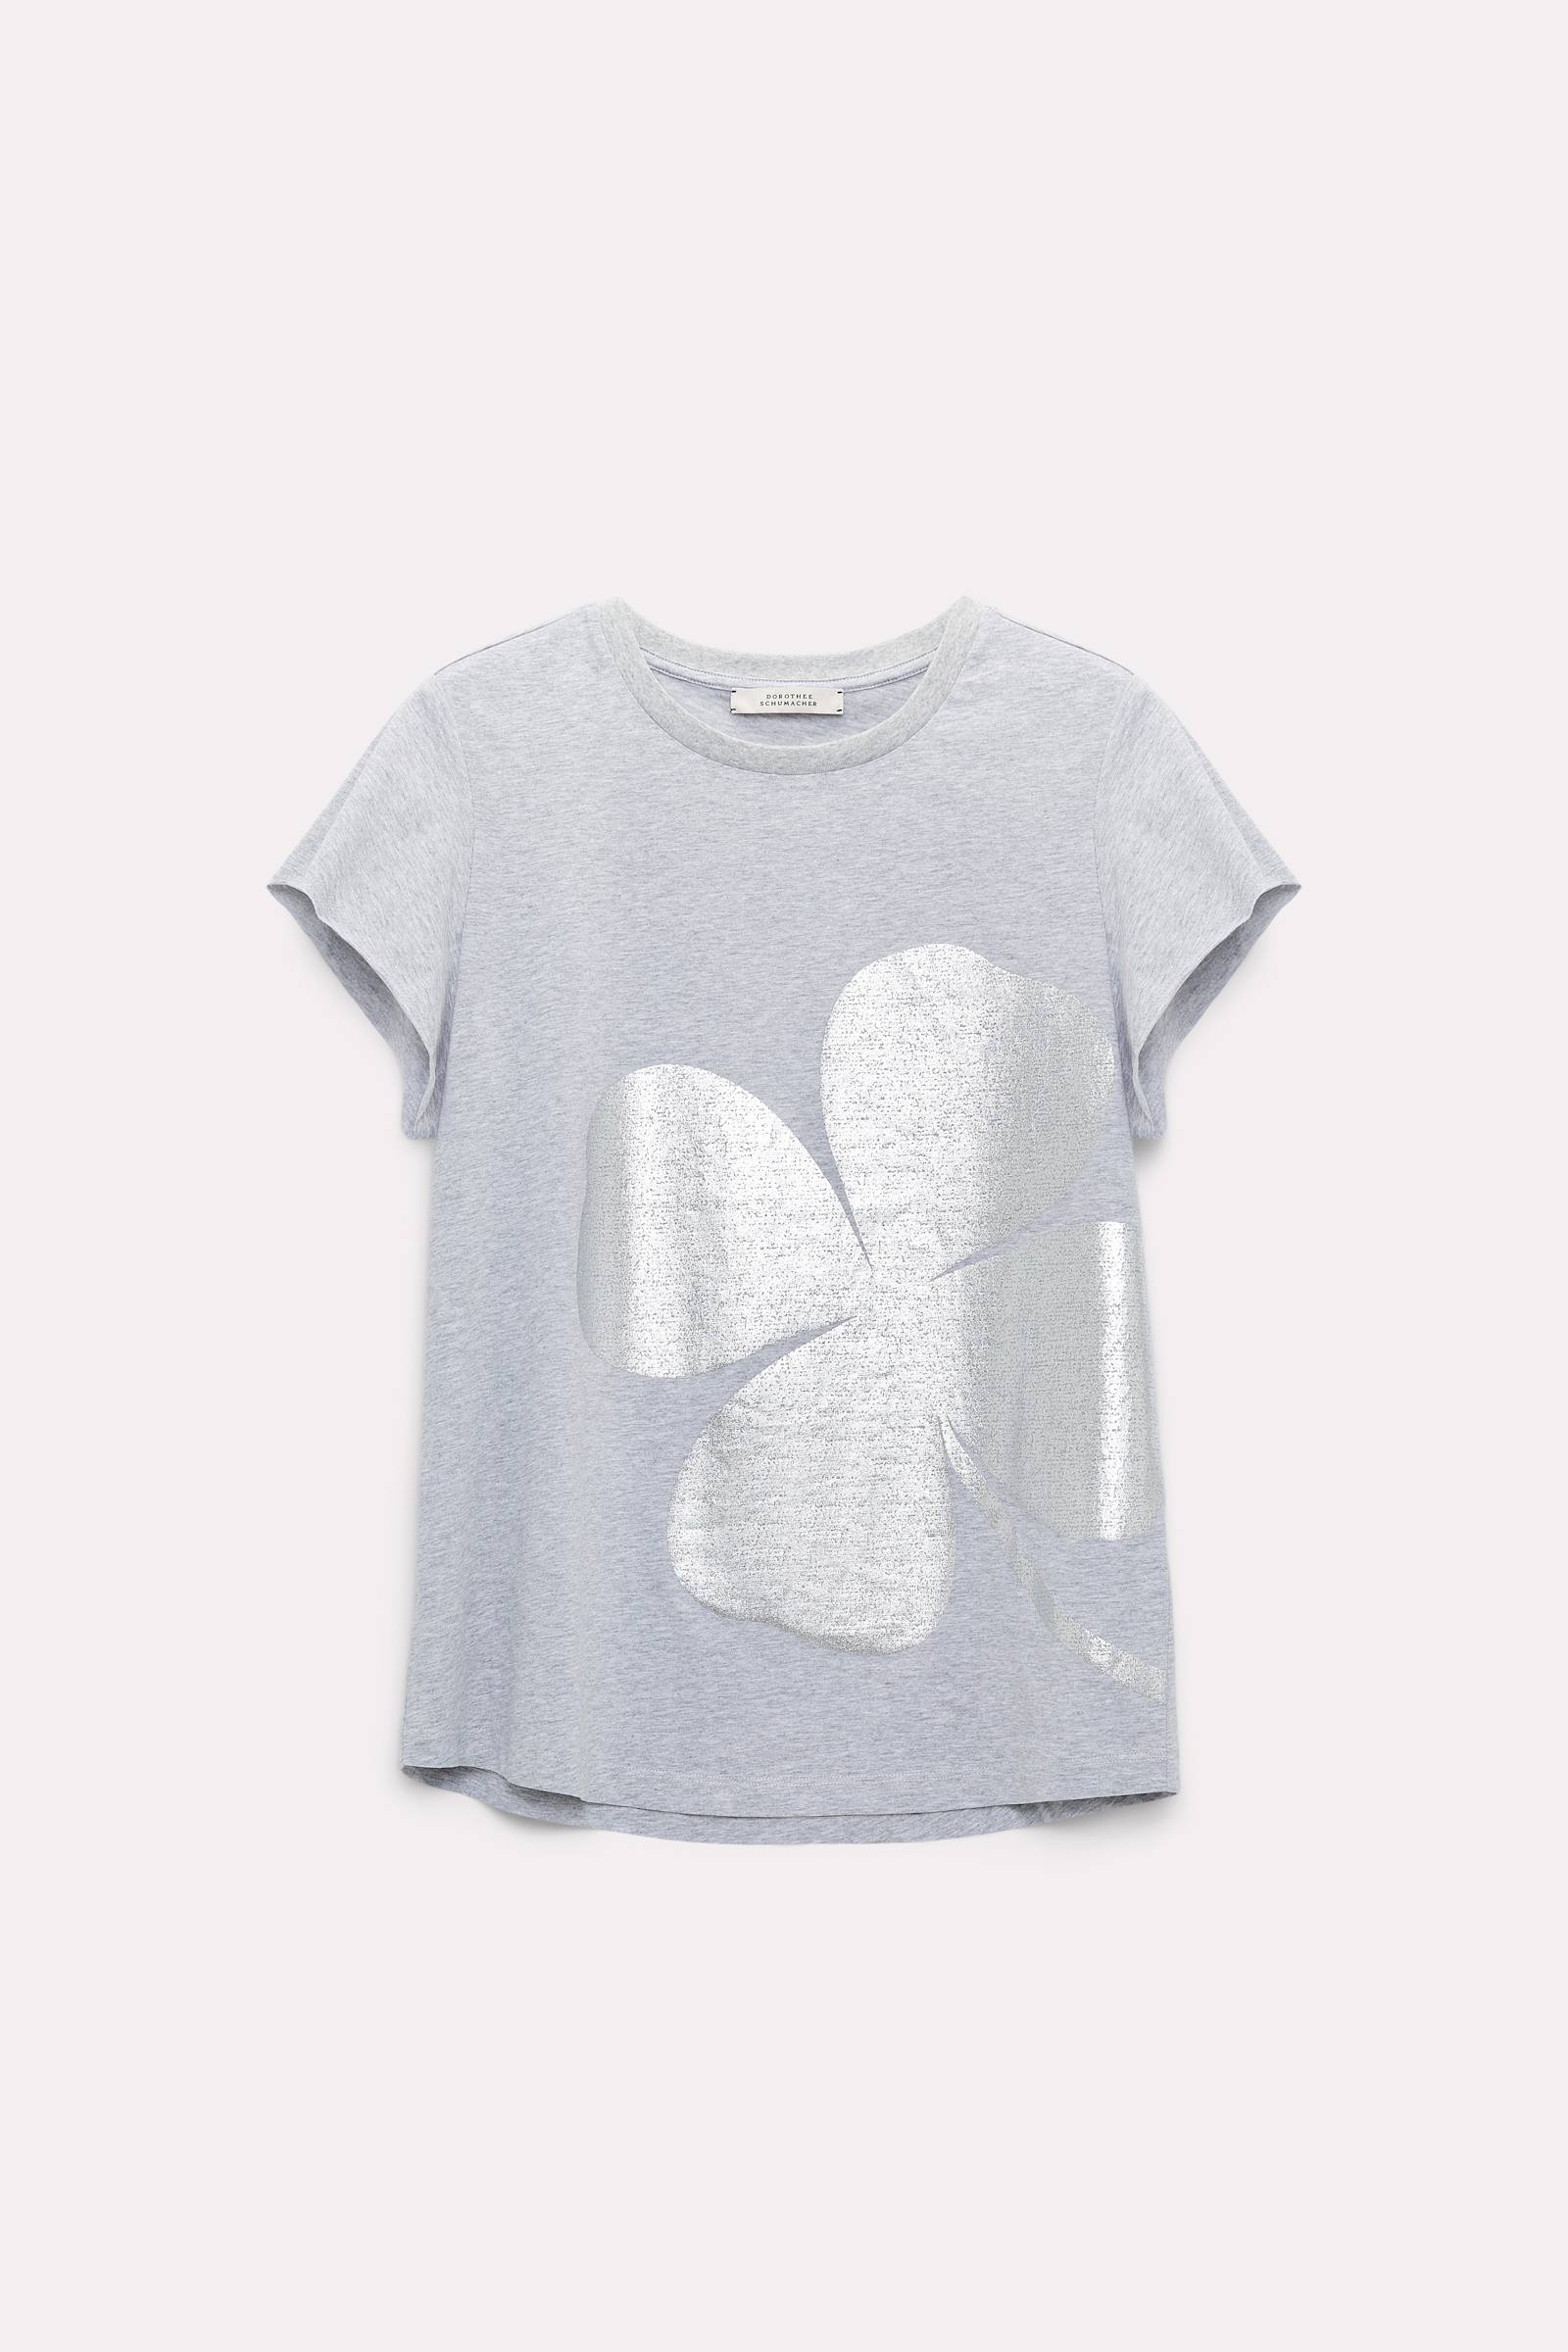 Dorothee Schumacher T-Shirt mit metallischem Print grey melange with silver print